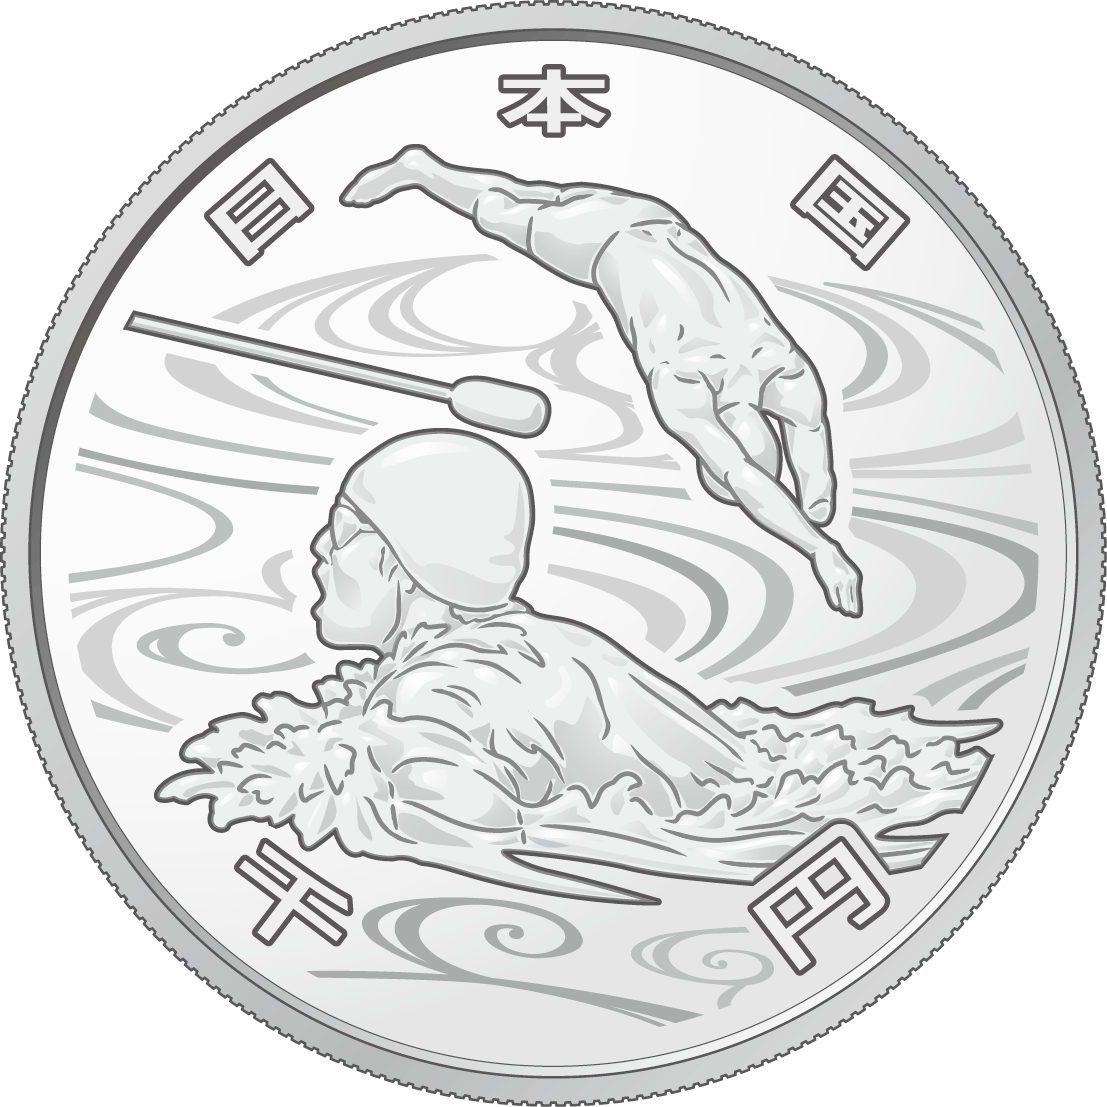 東京2020パラリンピック競技記念硬貨(1,000円)